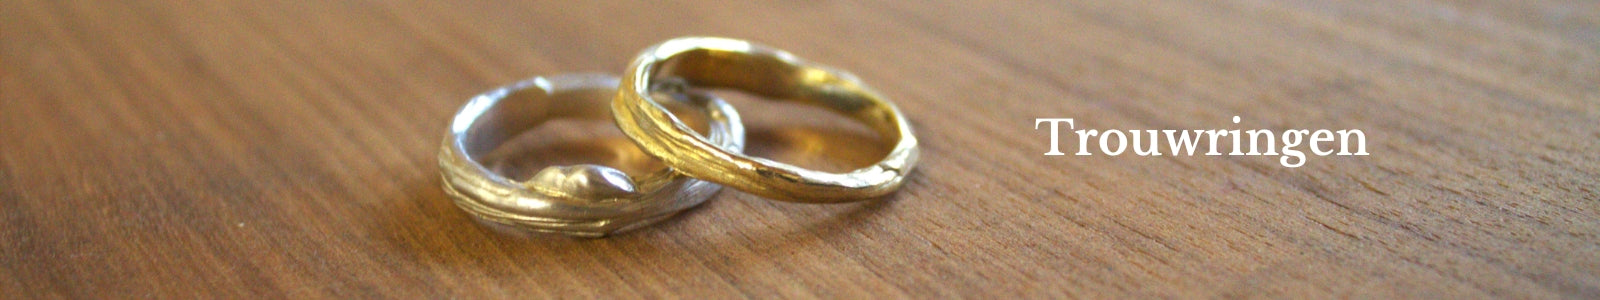 Trouwringen uit de natuur. Ringen van verschillende soorten goud met of zonder edelstenen. Handgemaakt van hoge kwaliteit door Goudsmederij Goedbloed. Ontdek de collectie.